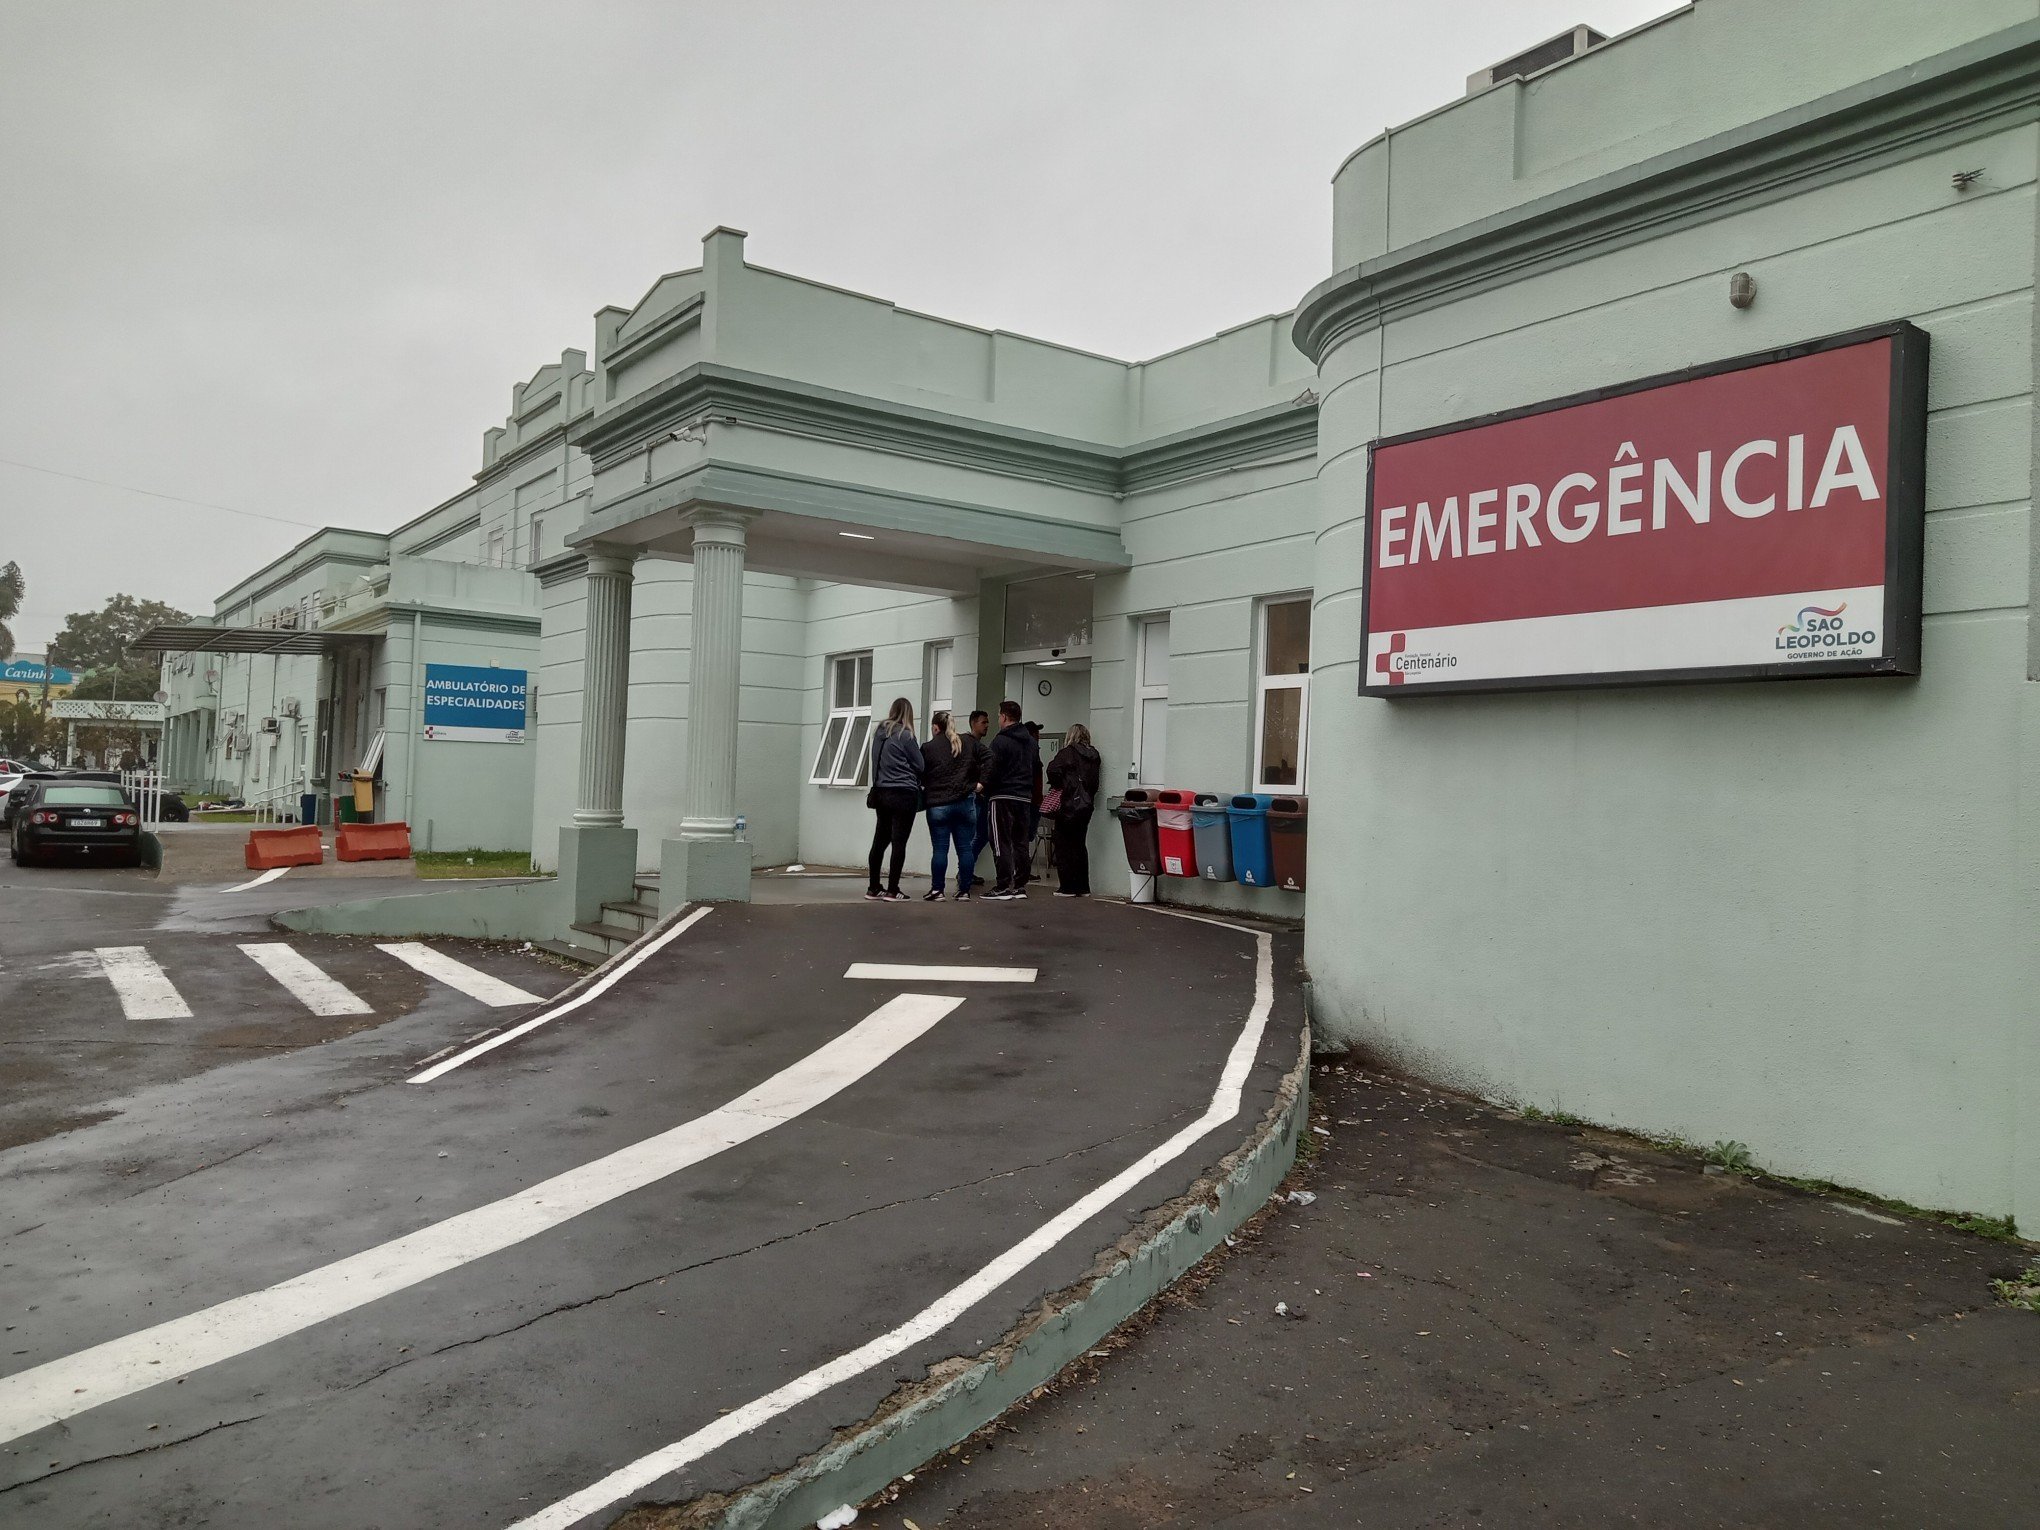 Golpistas usam o nome do Hospital Centenário para tentar tirar dinheiro de pacientes de São Leopoldo